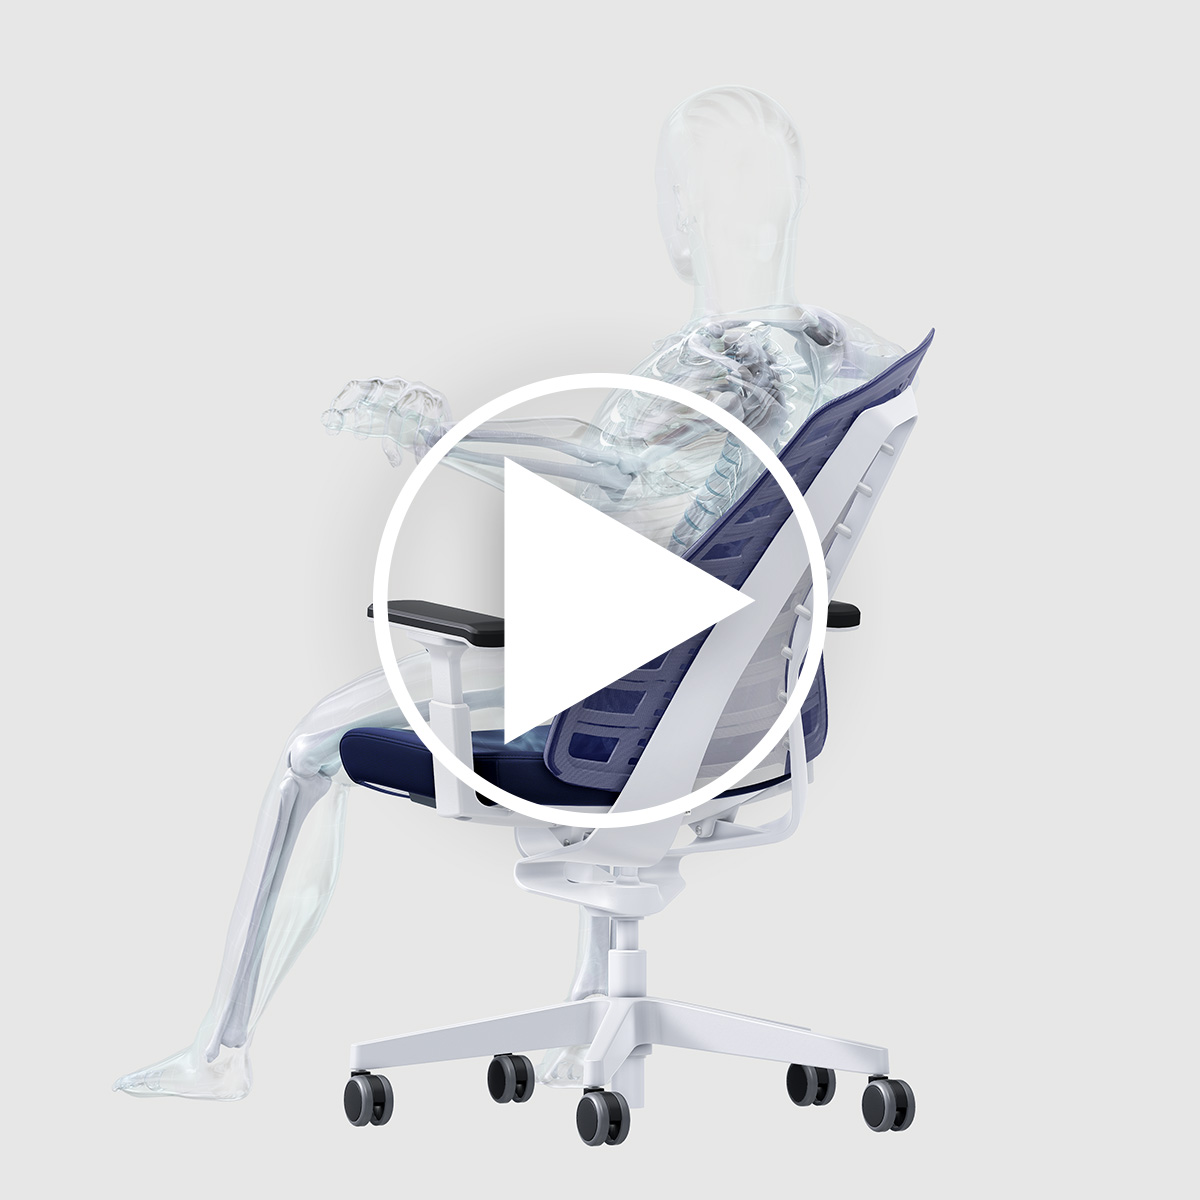 Video die drie factoren voor de eigen gezondheid en ergonomie laat zien aan de hand van een persoon op de PURE-bureaustoel.